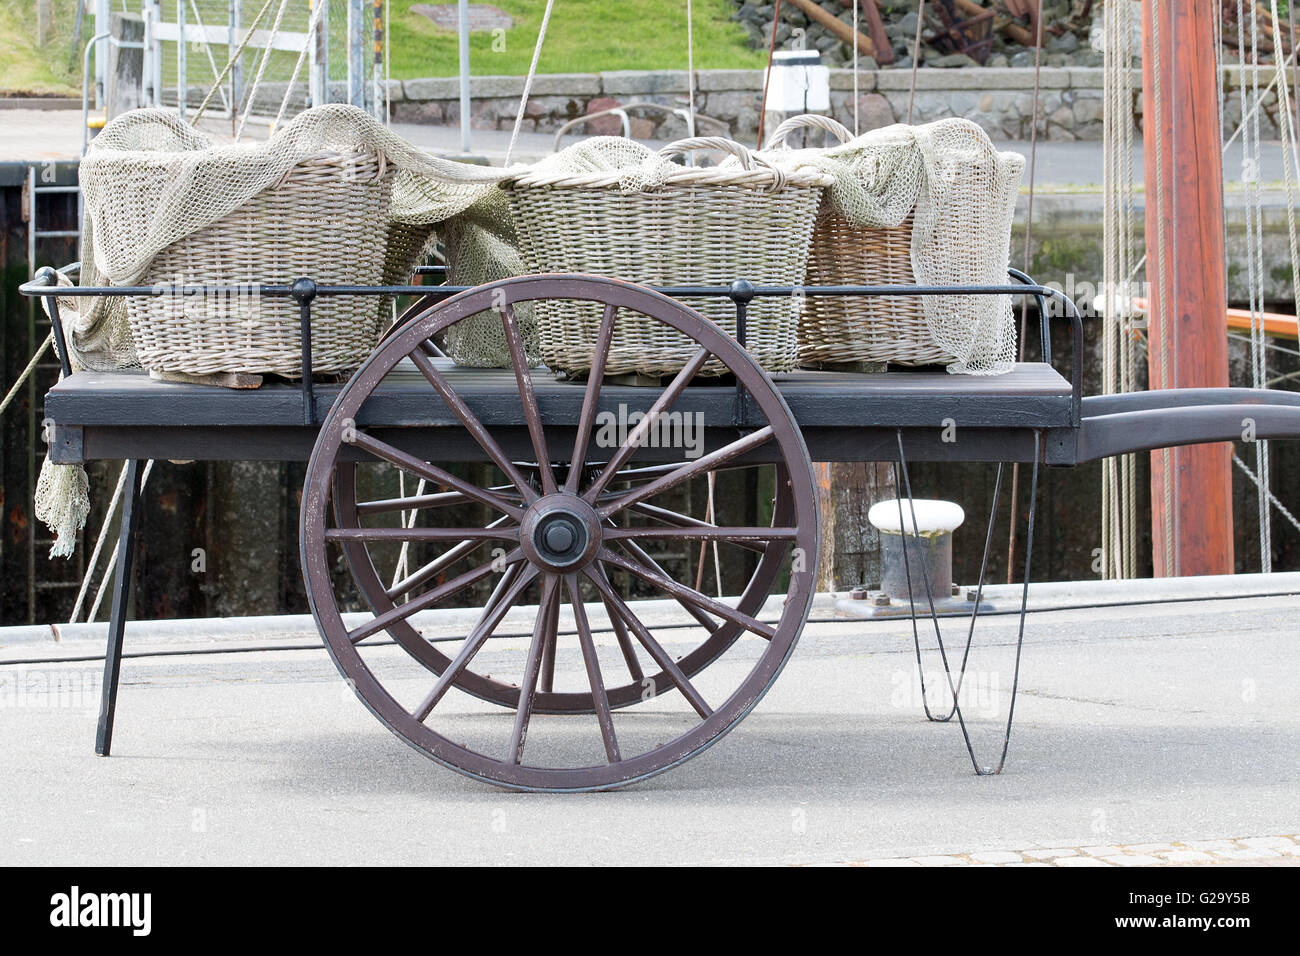 Körbe mit Netz auf einen Wagen  Baskets with net on a wagon Stock Photo